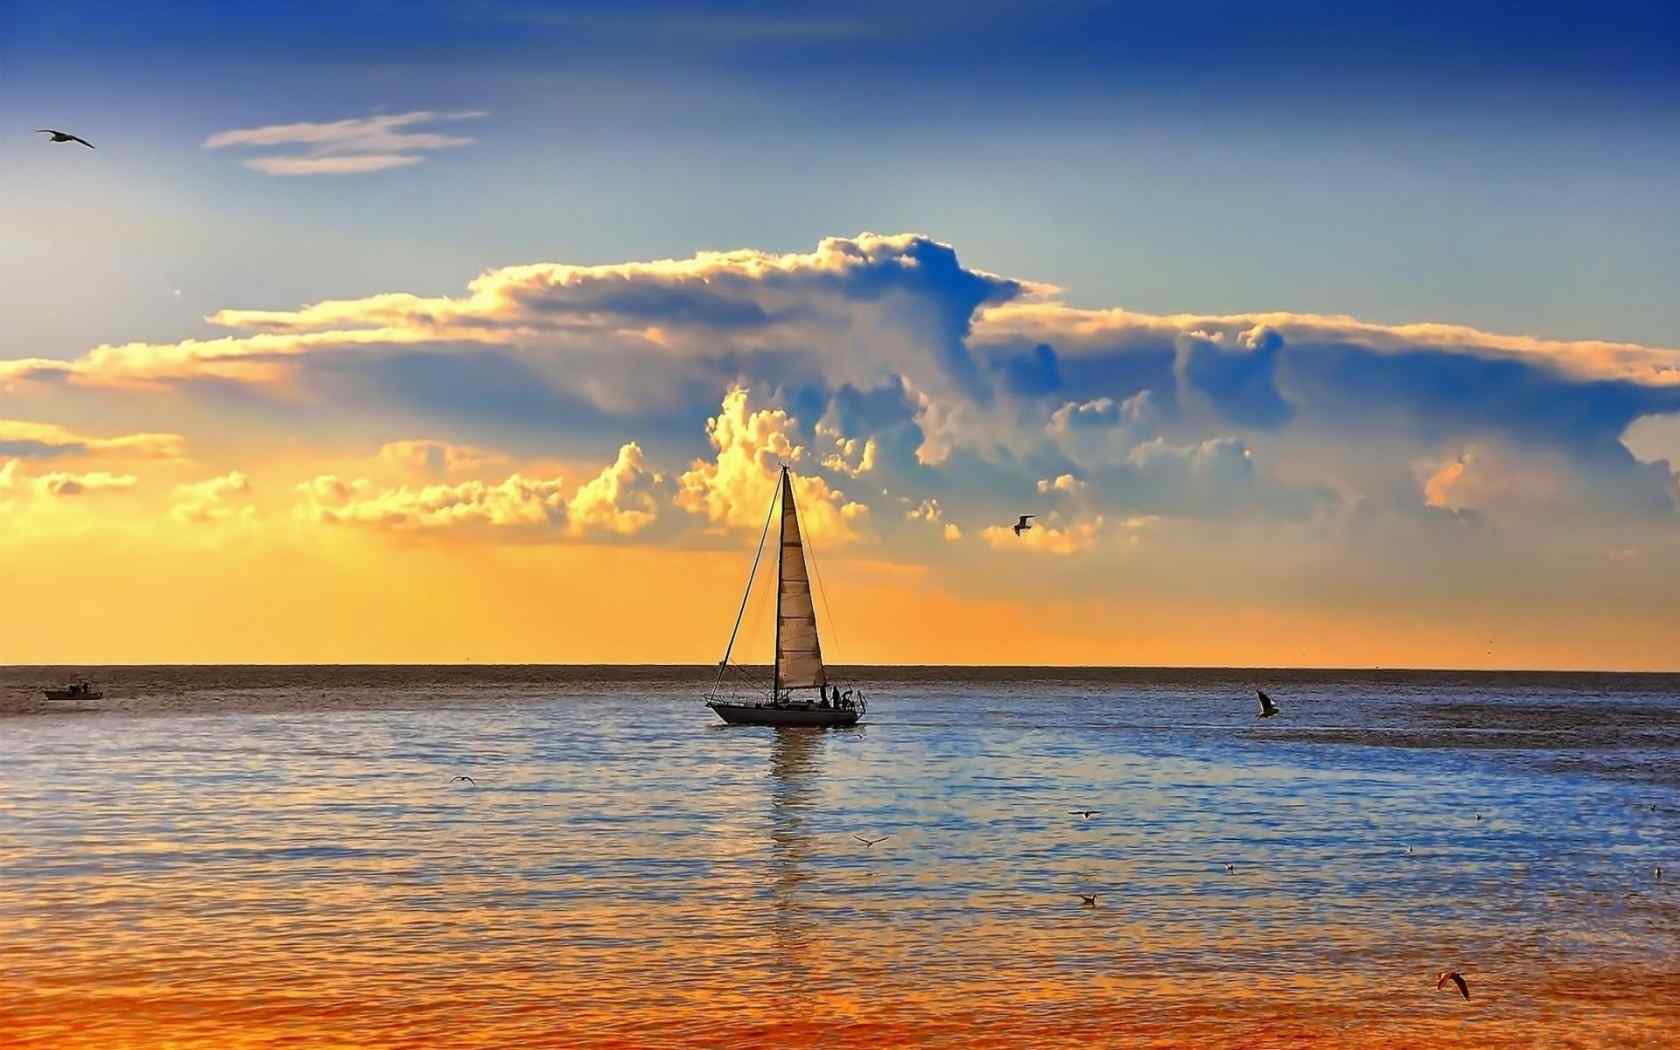 海面上的帆船唯美夕阳风景图片电脑桌面壁纸